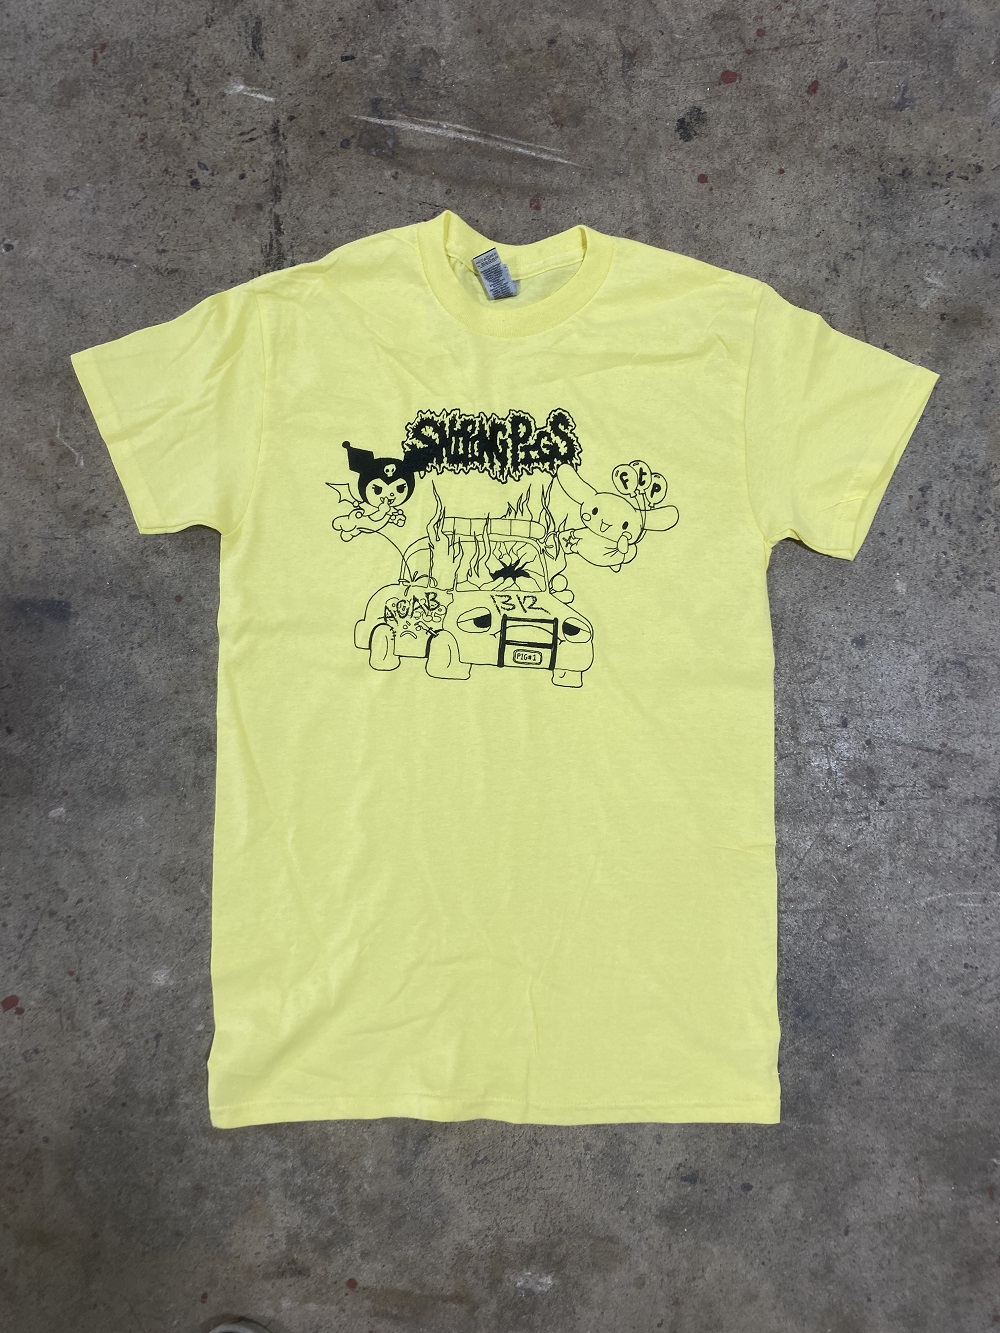 Sniping Pigs - Sanrio Car Bomb Shirt (XXL)